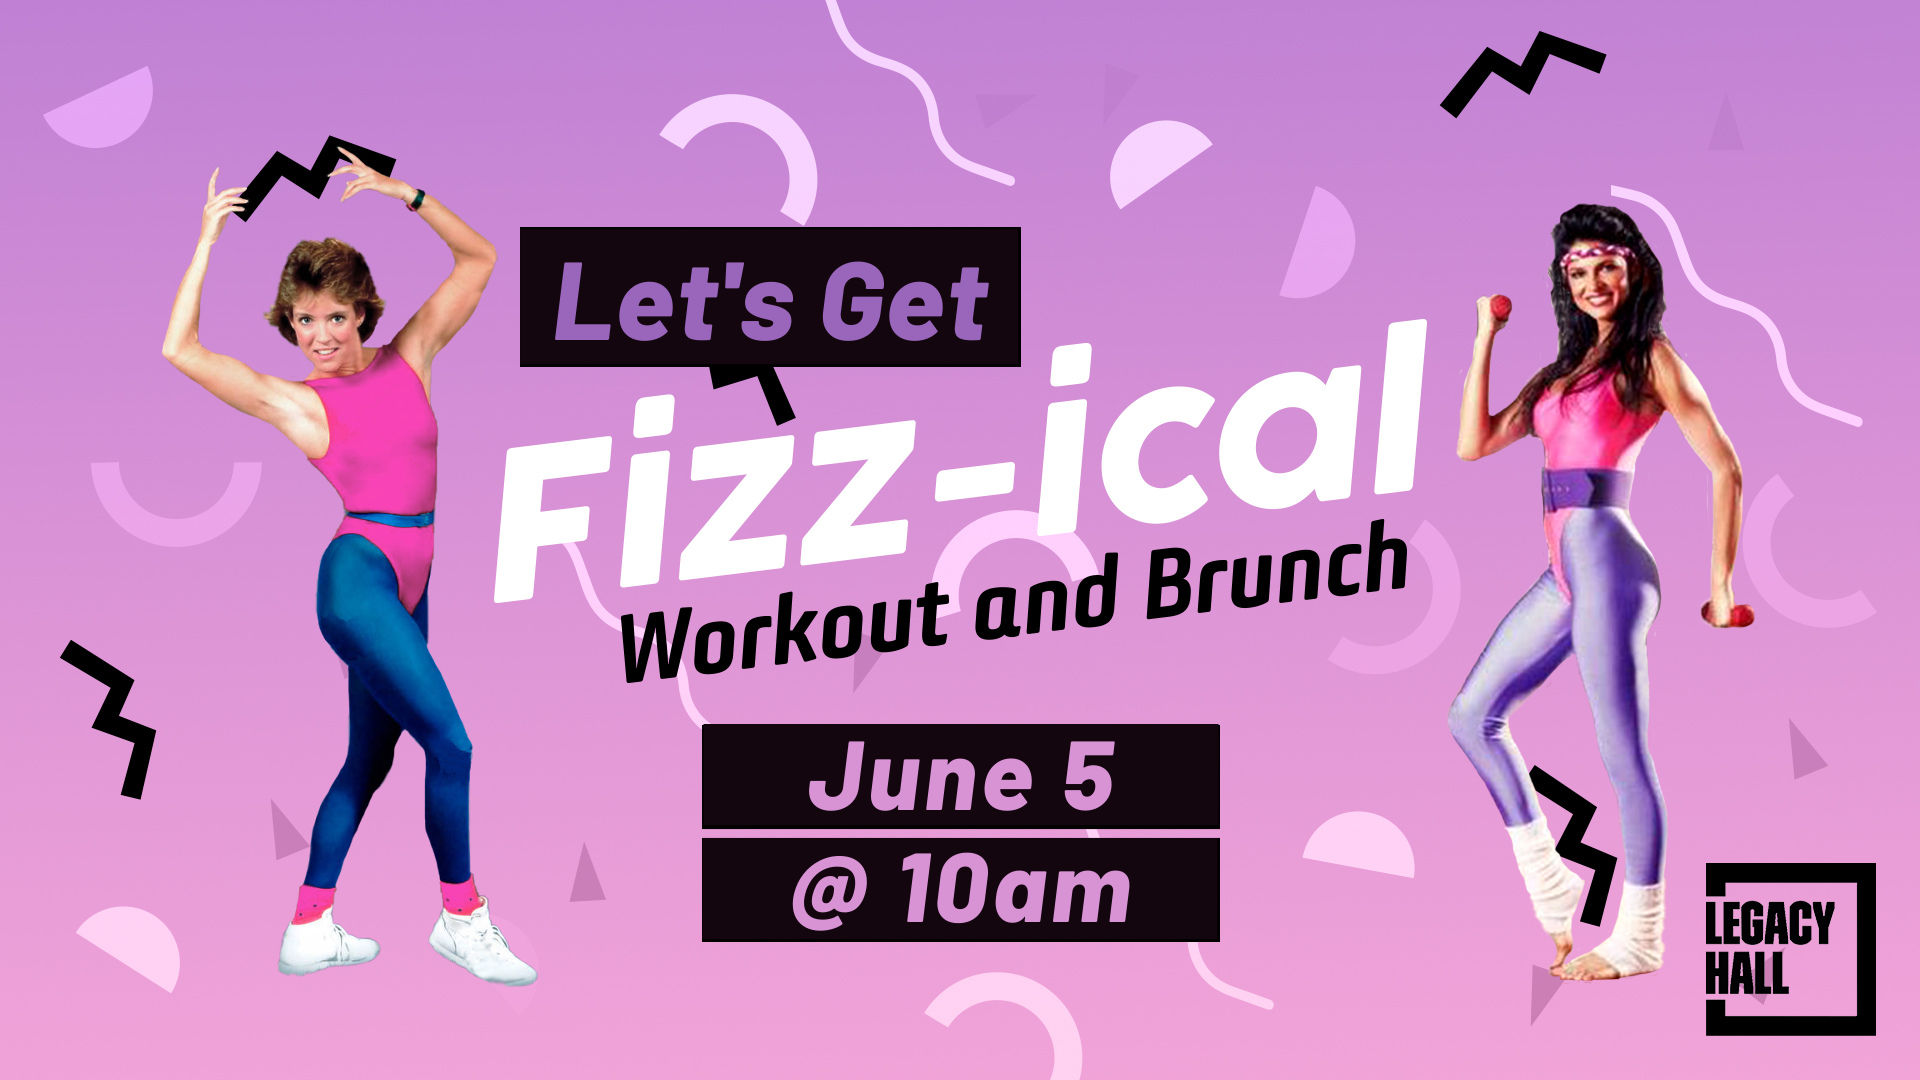 Let’s Get Fizz-ical Workout & Brunch - hero